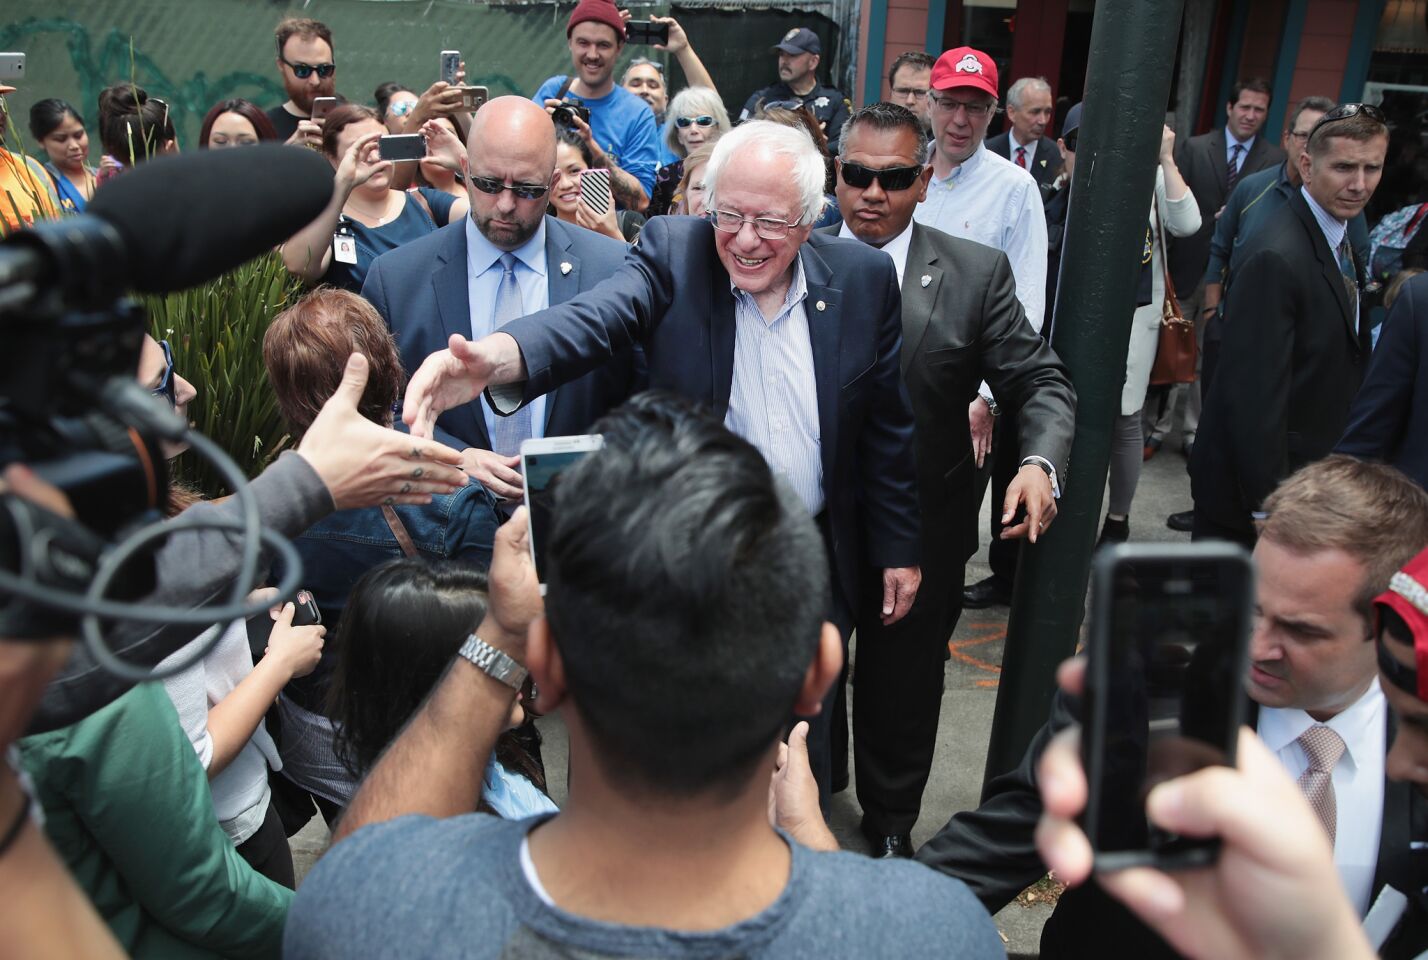 Bernie Sanders greets people in Oakland.